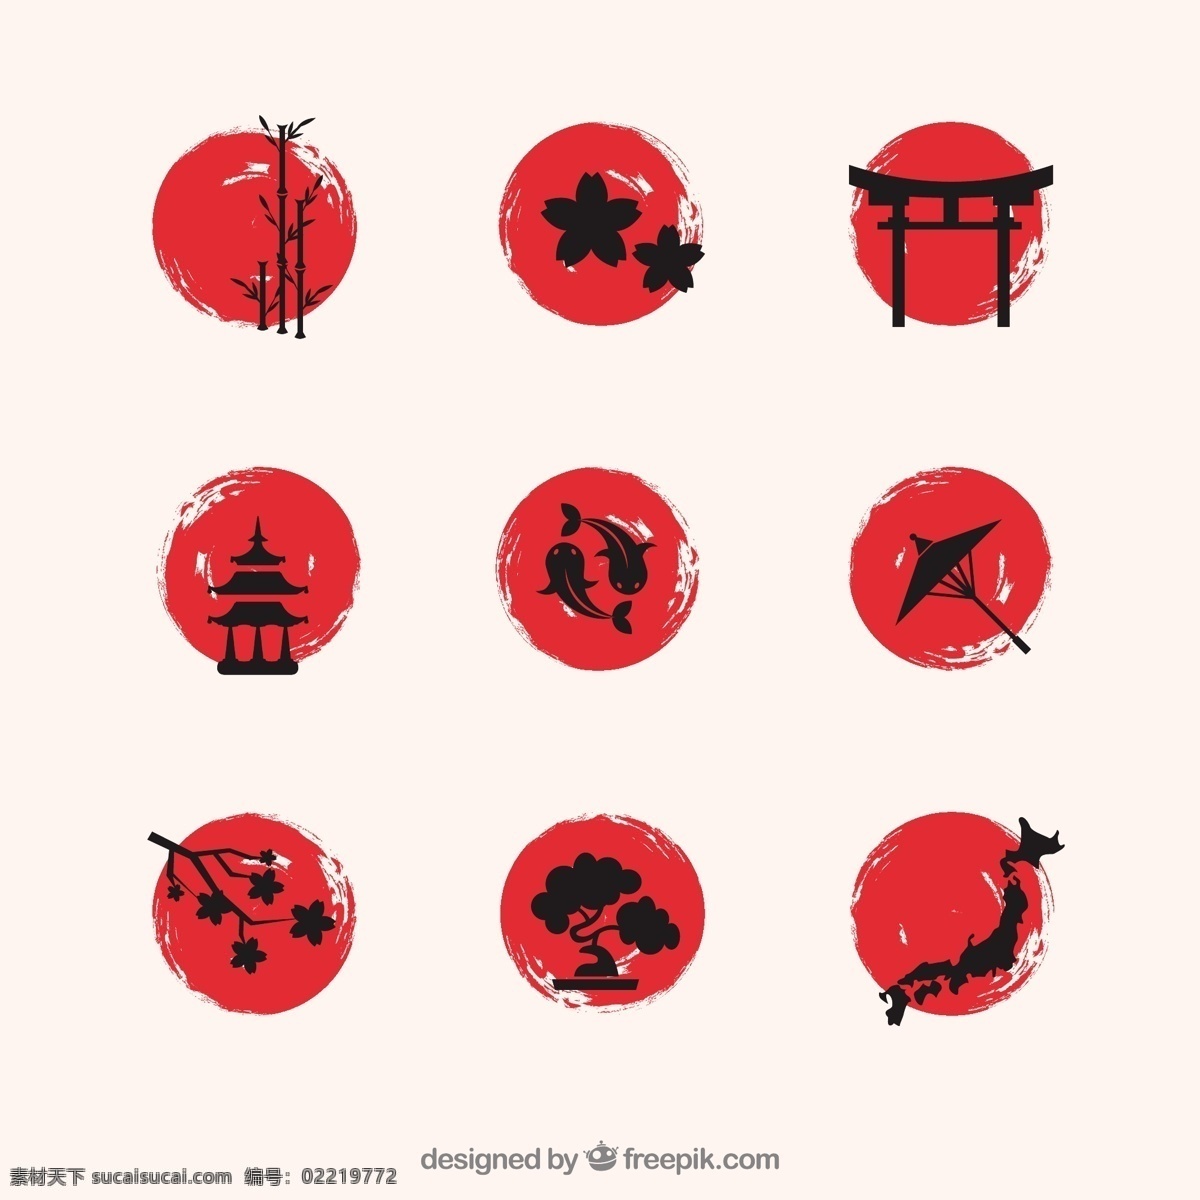 手绘日本元素 水彩 油漆 日本 樱花 开花 竹子 东方 樱桃 文化 亚洲 锦鲤 盆景